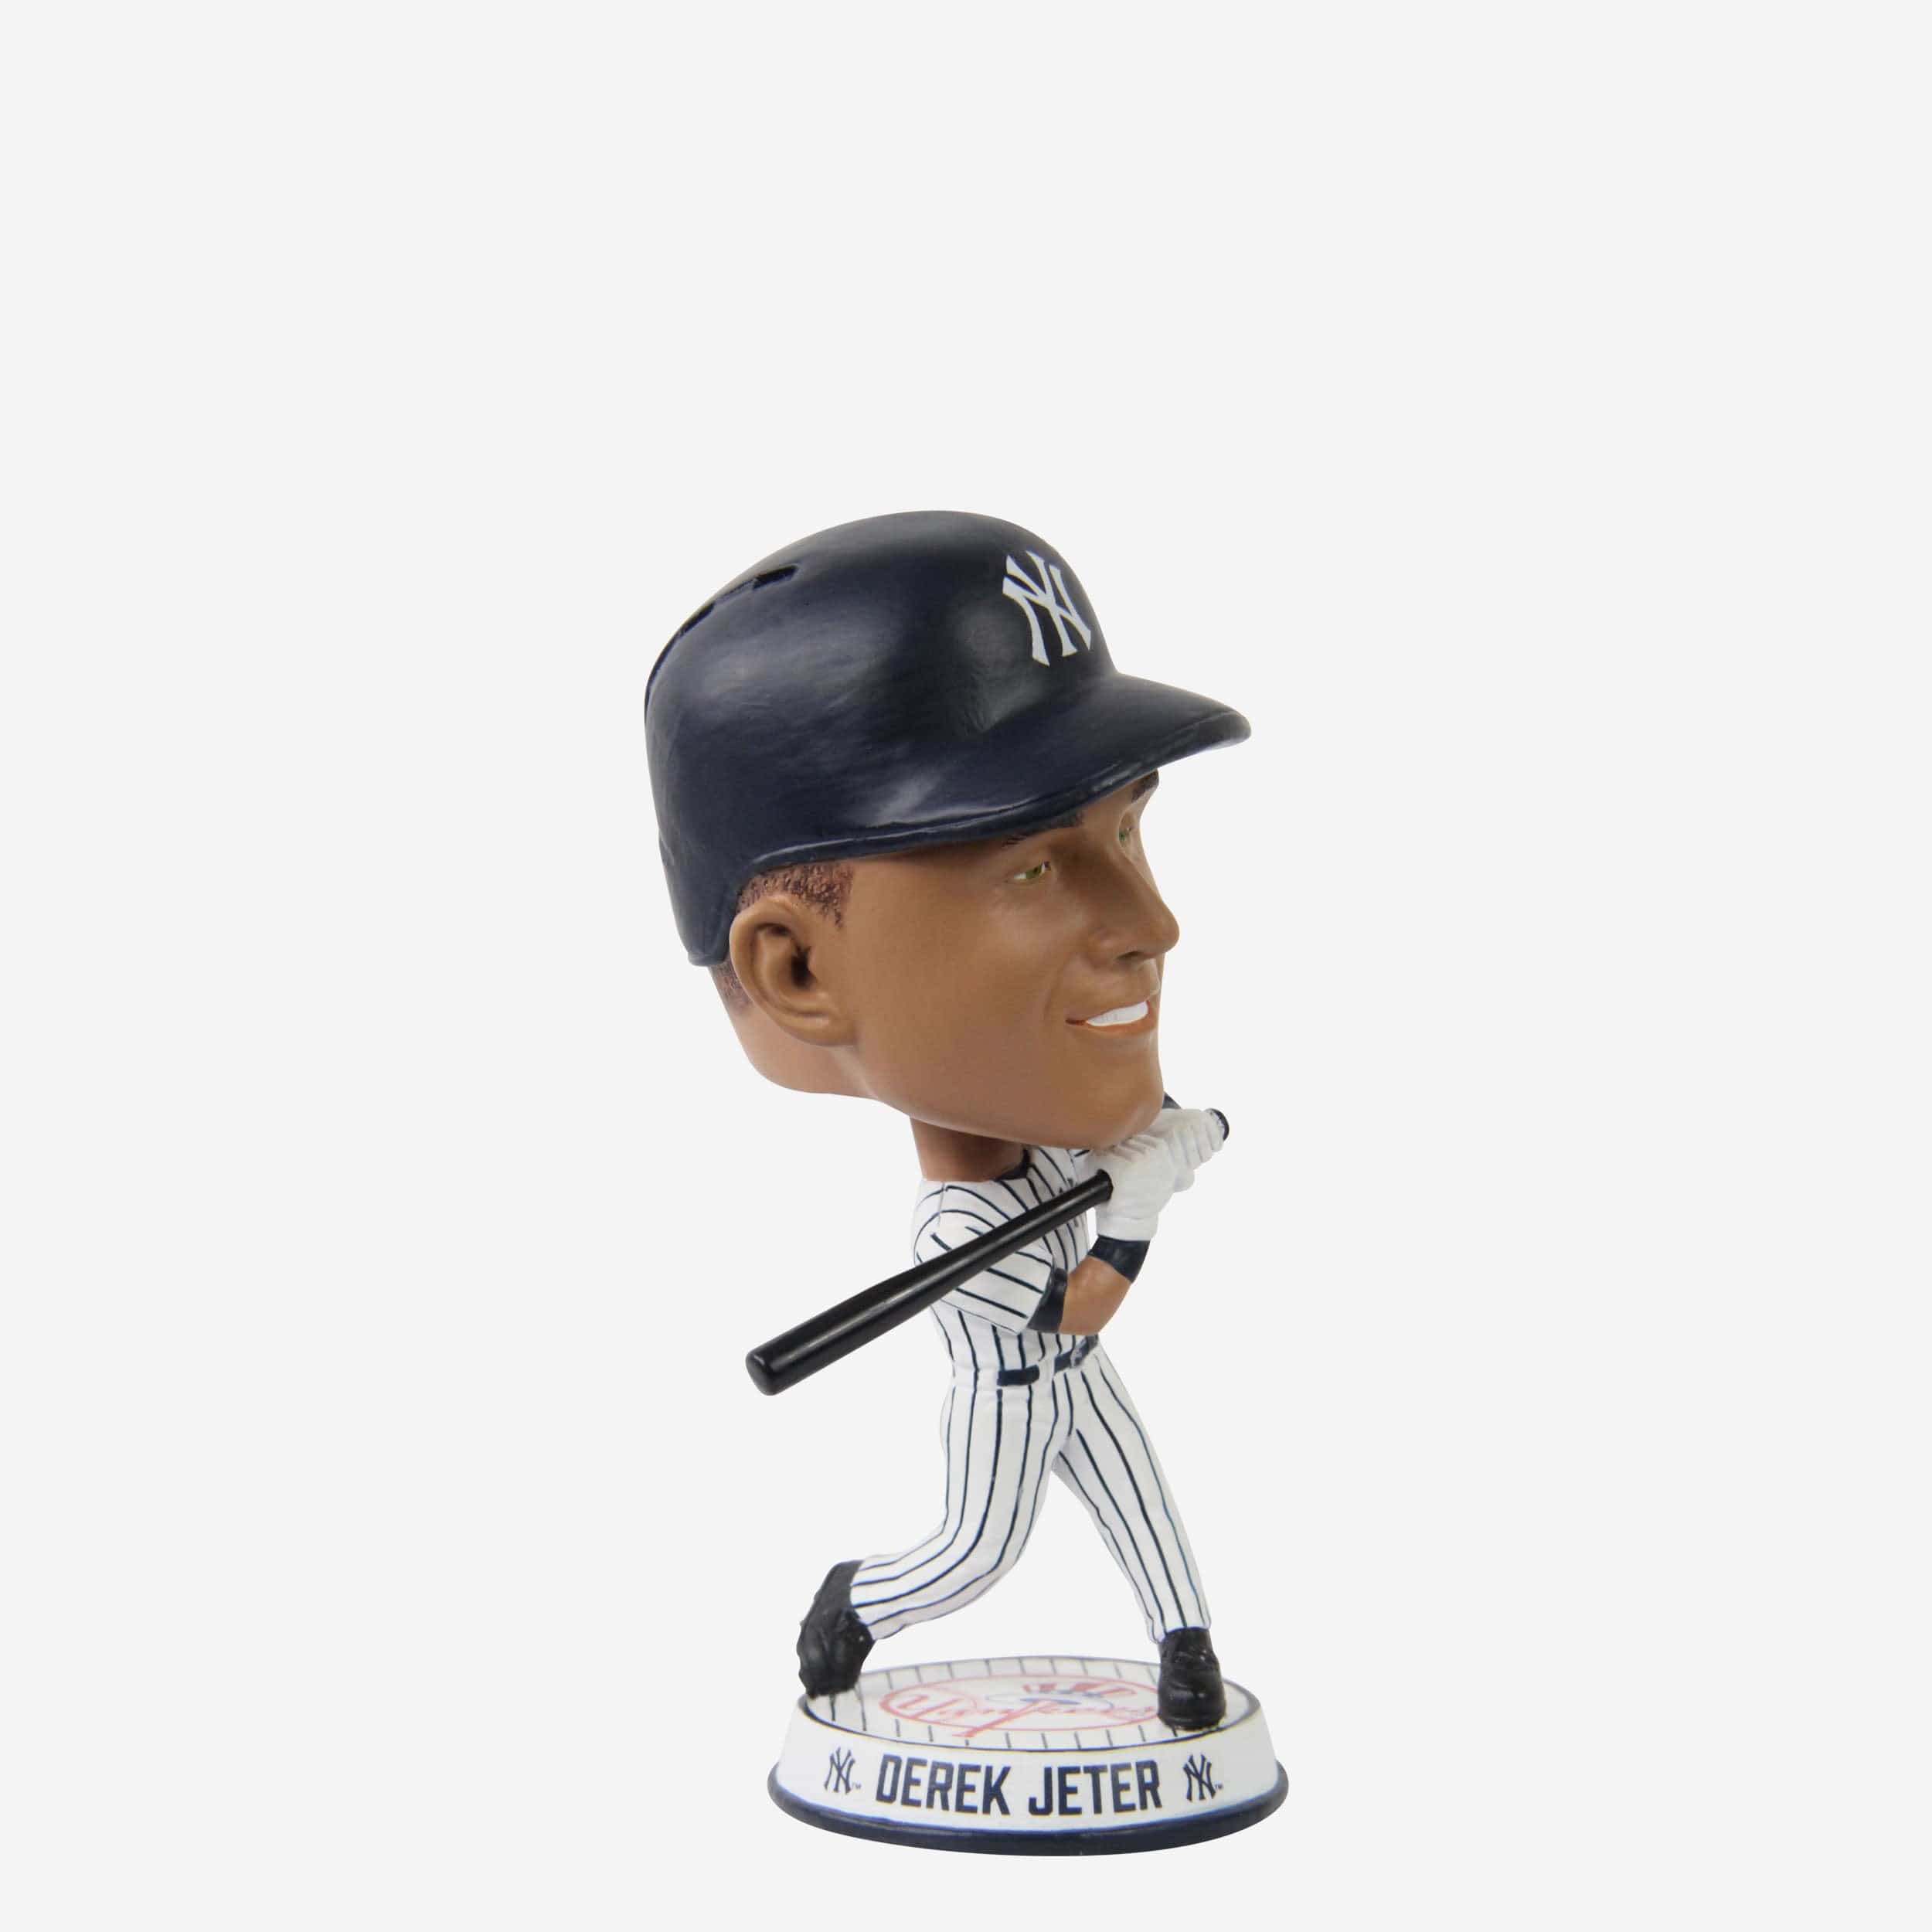 Derek Jeter New York Yankees Mini Bighead Bobblehead Officially Licensed by MLB